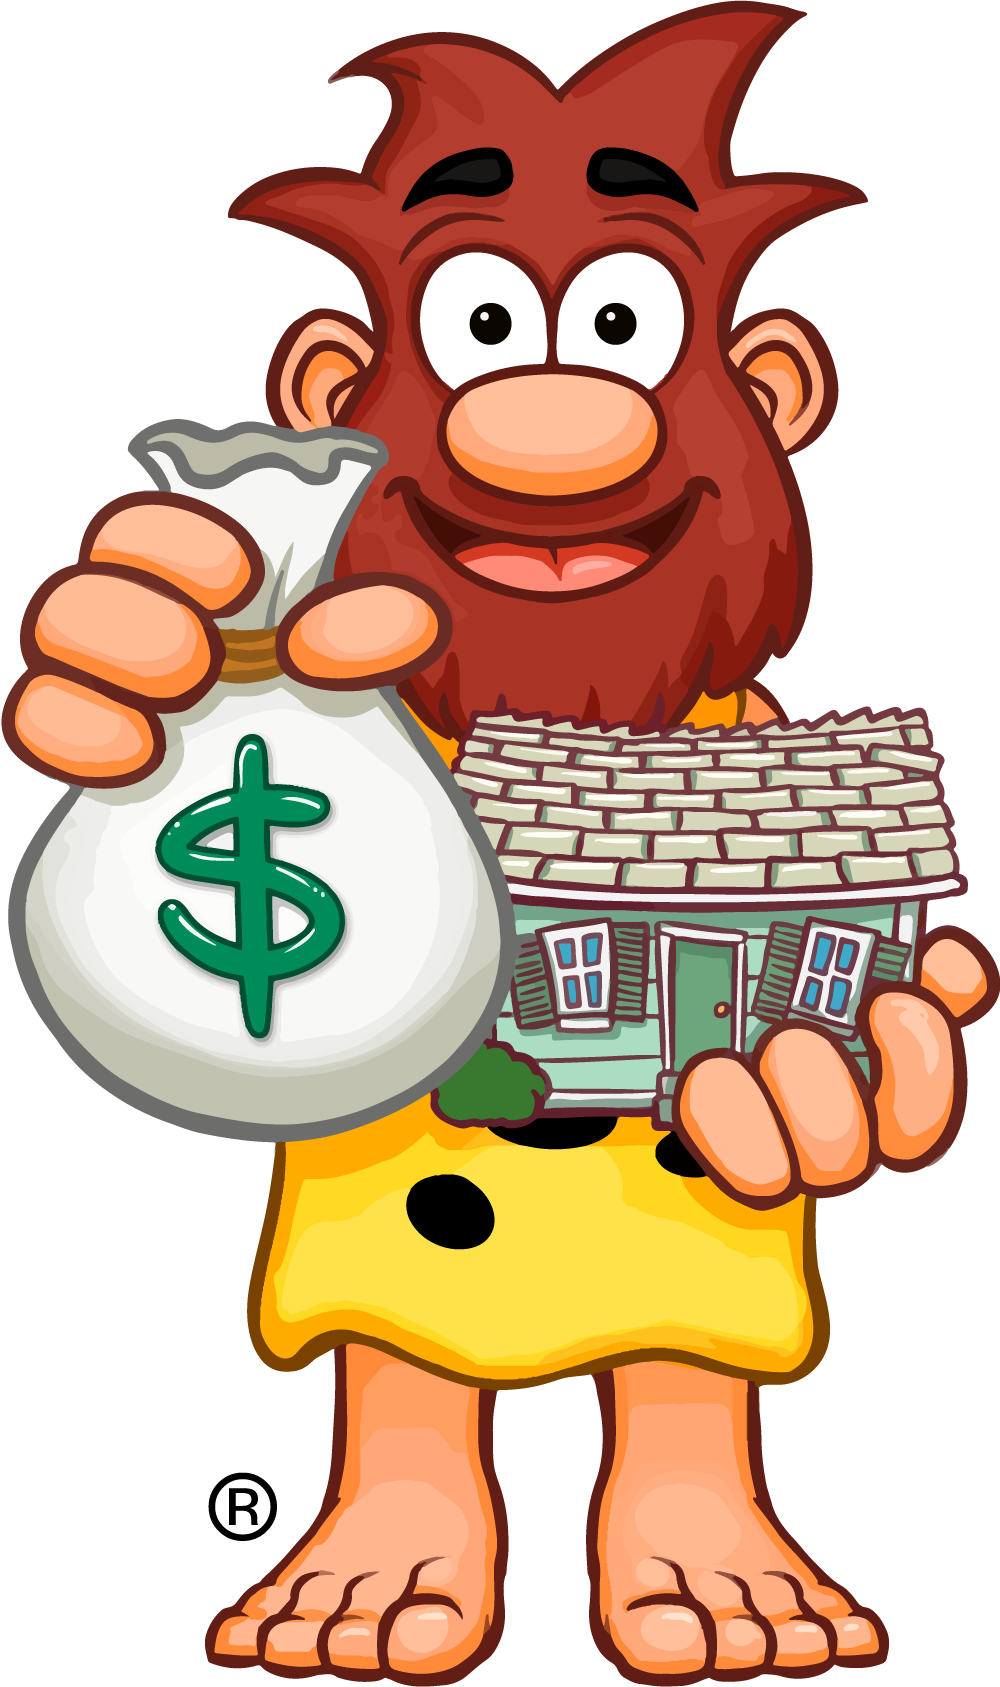 Ug giving you cash for your house